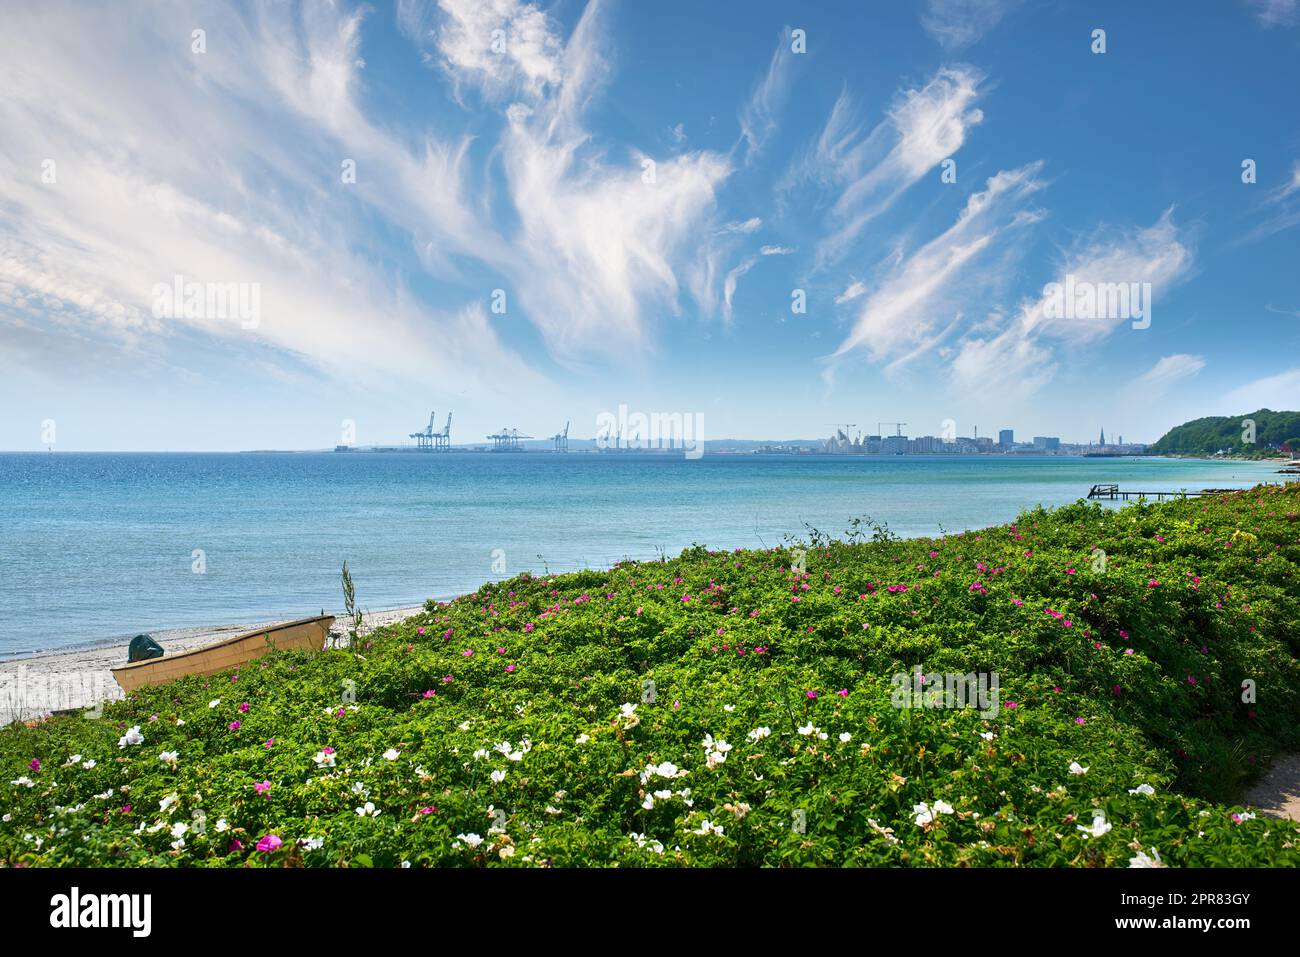 Bord de mer ensoleillé avec plantes sauvages fleuries. Mer calme contre un horizon bleu nuageux avec espace de copie. Végétation luxuriante s'élevant sur des dunes près d'un océan magnifique. Panorama de la nature avec un port en arrière-plan Banque D'Images